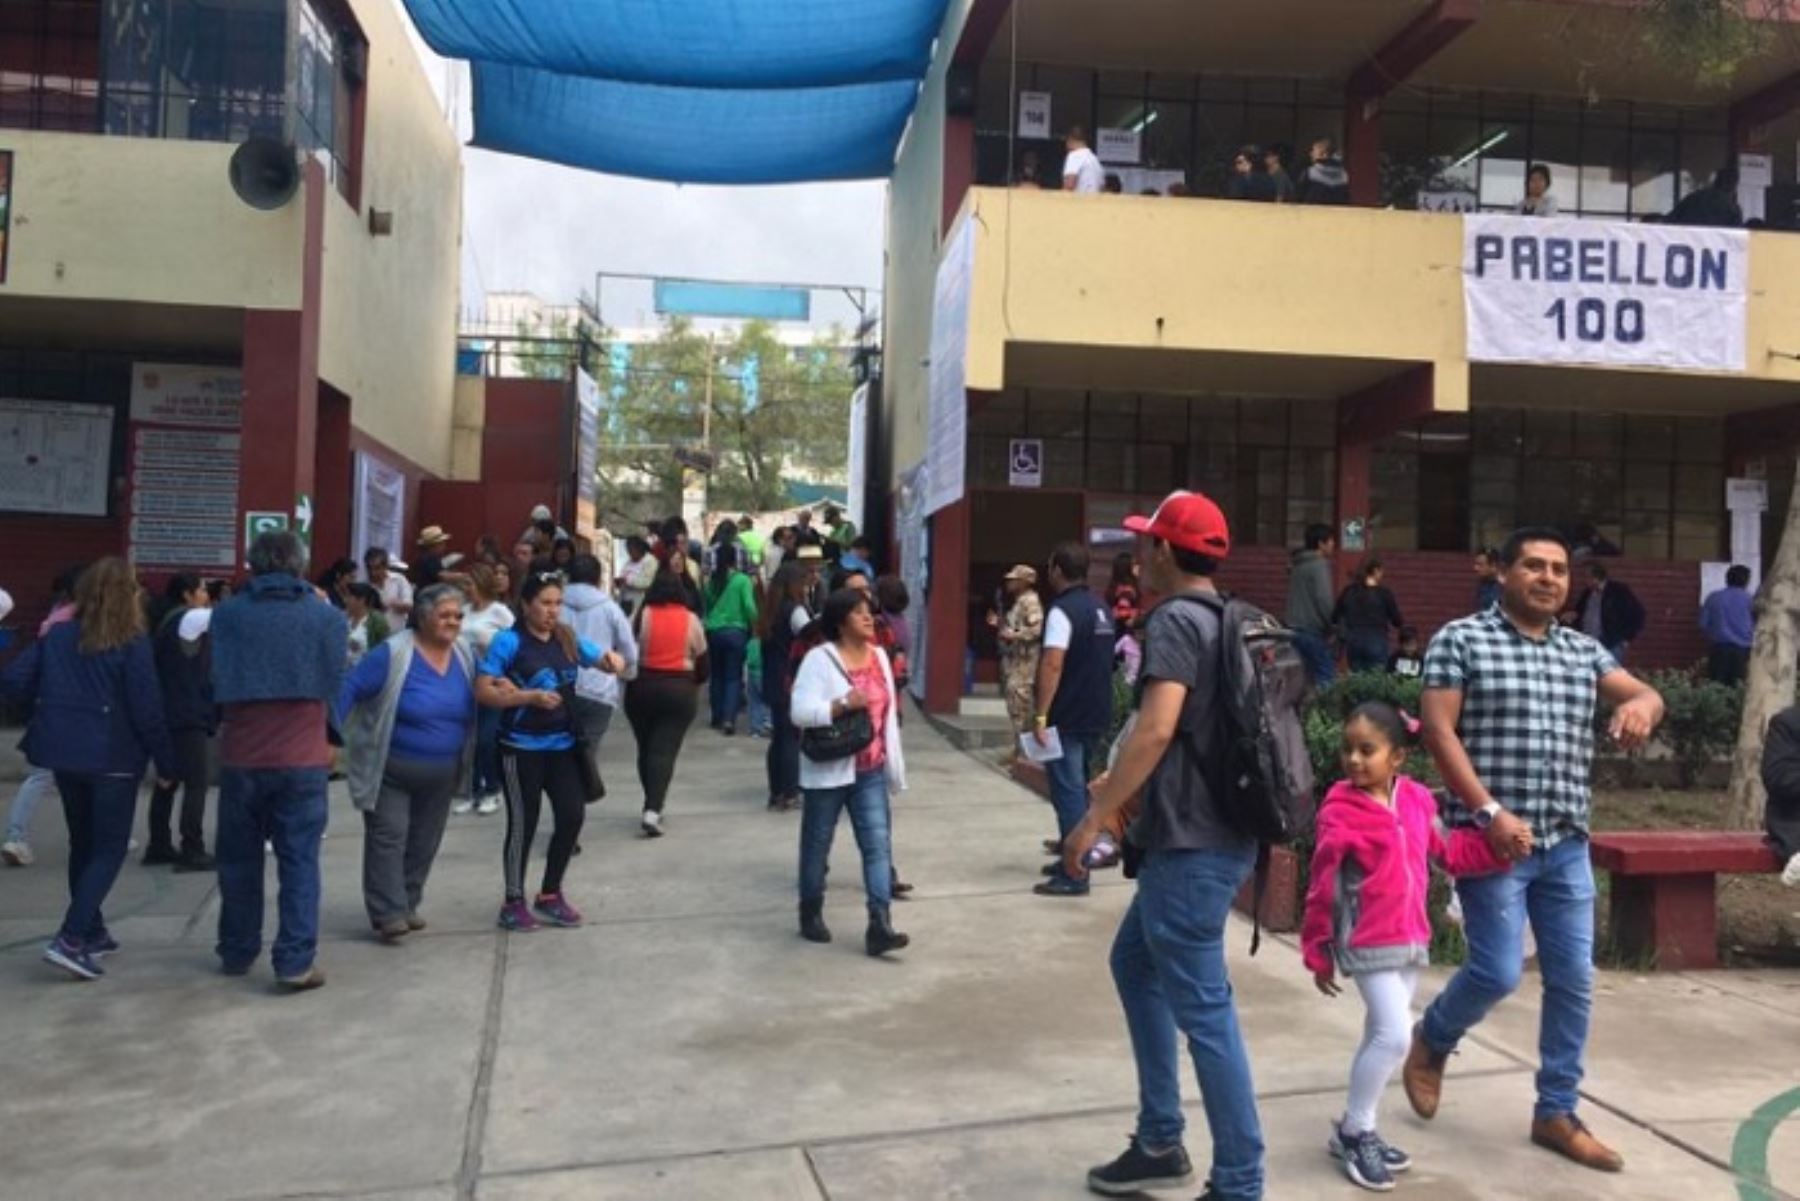 La Defensoría del Pueblo supervisa el desarrollo del proceso electoral en las provincias de Caravelí, Islay, Camaná y Arequipa. Foto: ANDINA/Difusión